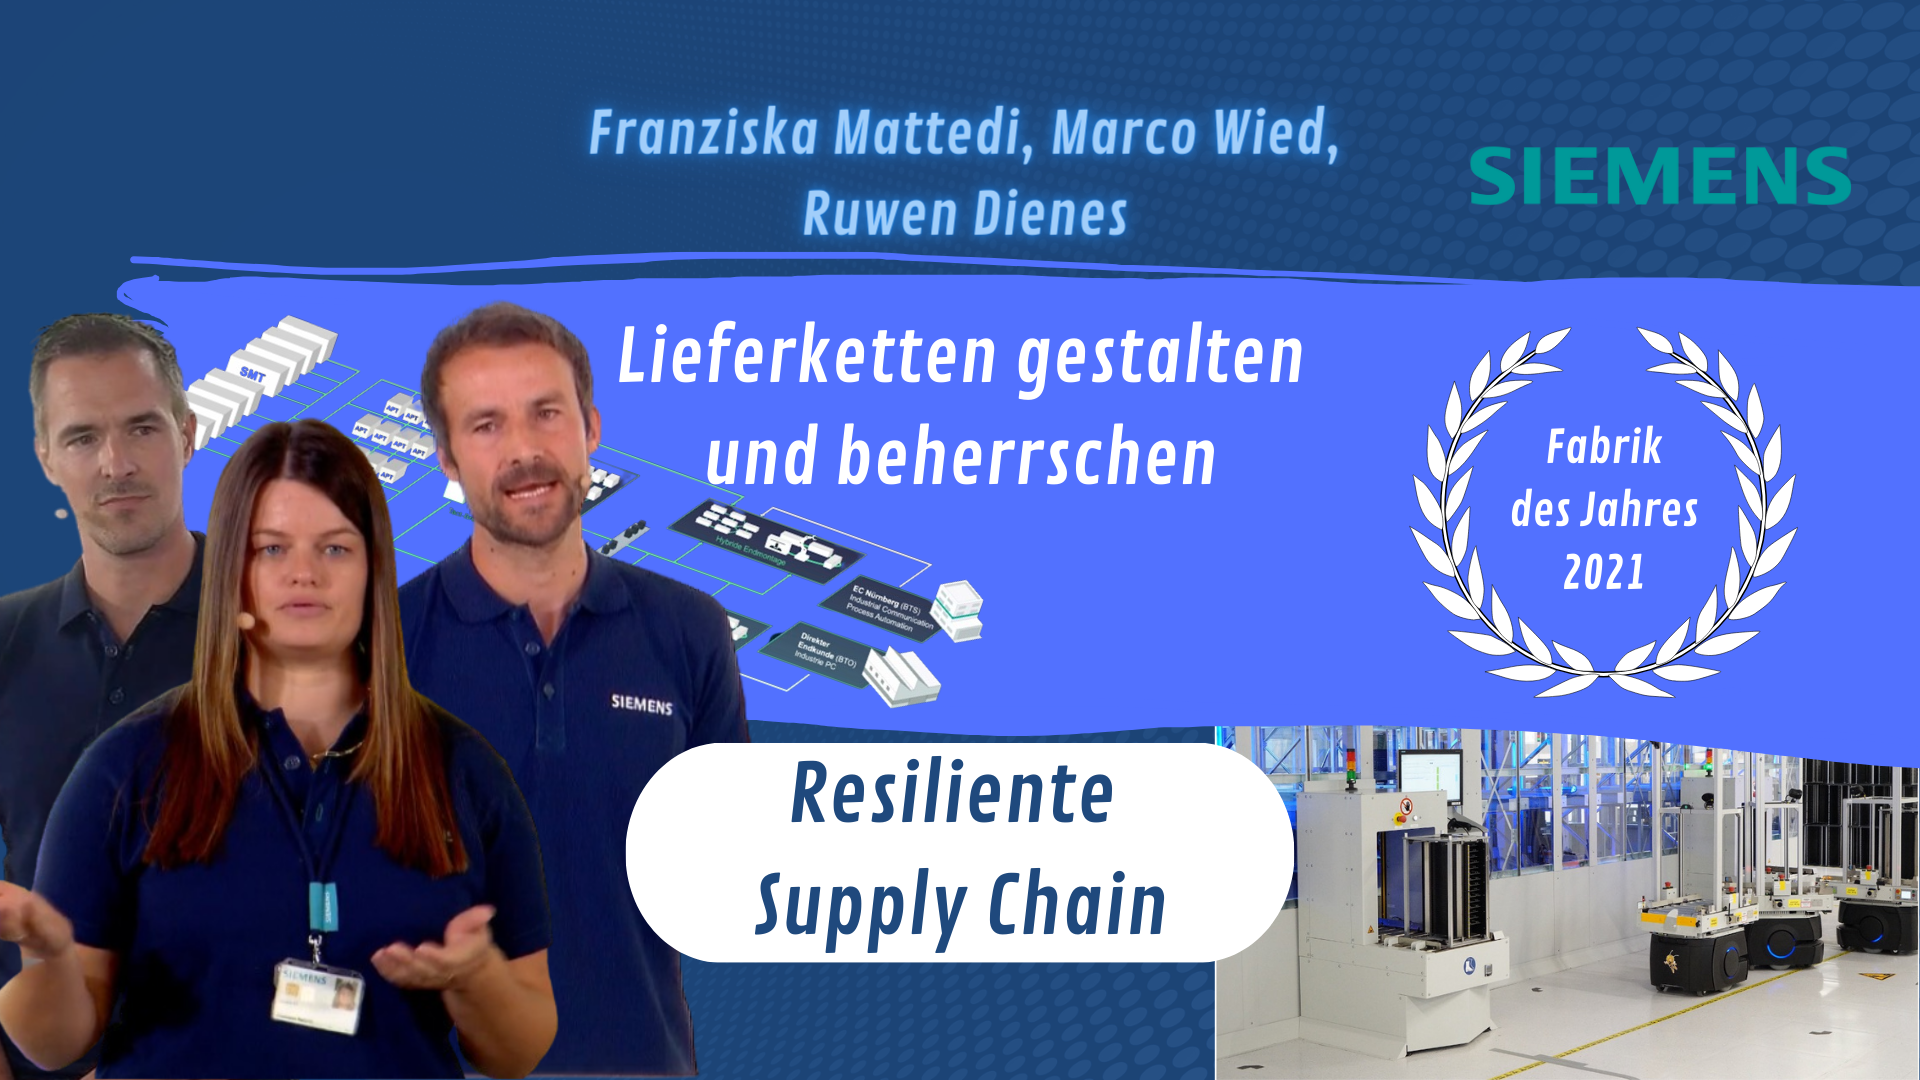 DIGITAL - Resilient supply chain with Franziska Mattedi, Marco Wied & Ruwen Dienes